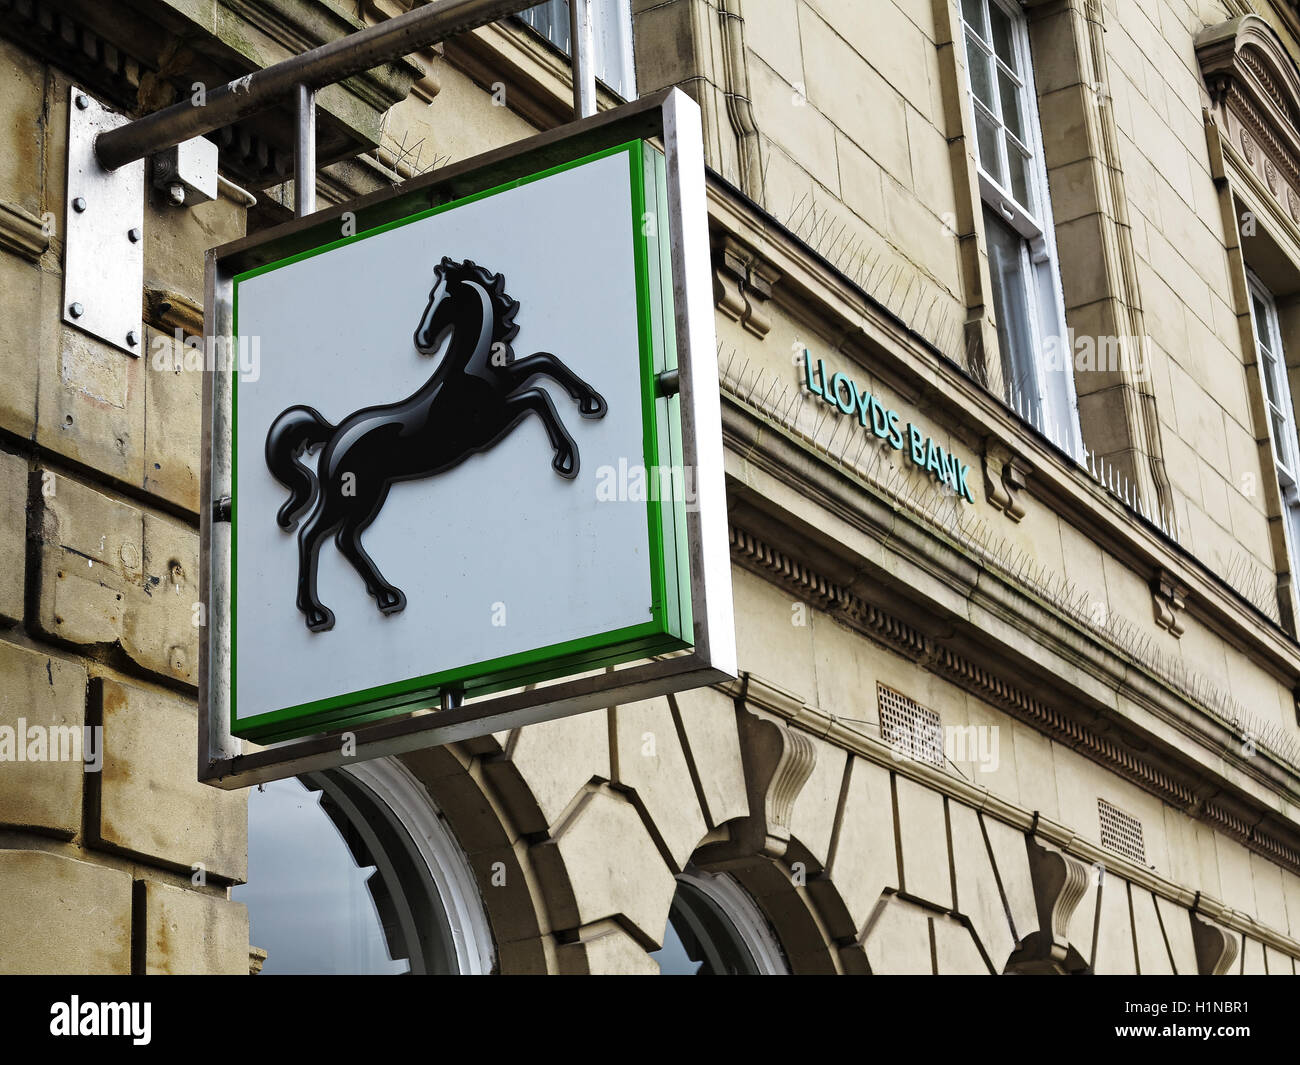 Le signe de l'cheval noir. La Banque Lloyds, Rothbury, Northumberland Banque D'Images